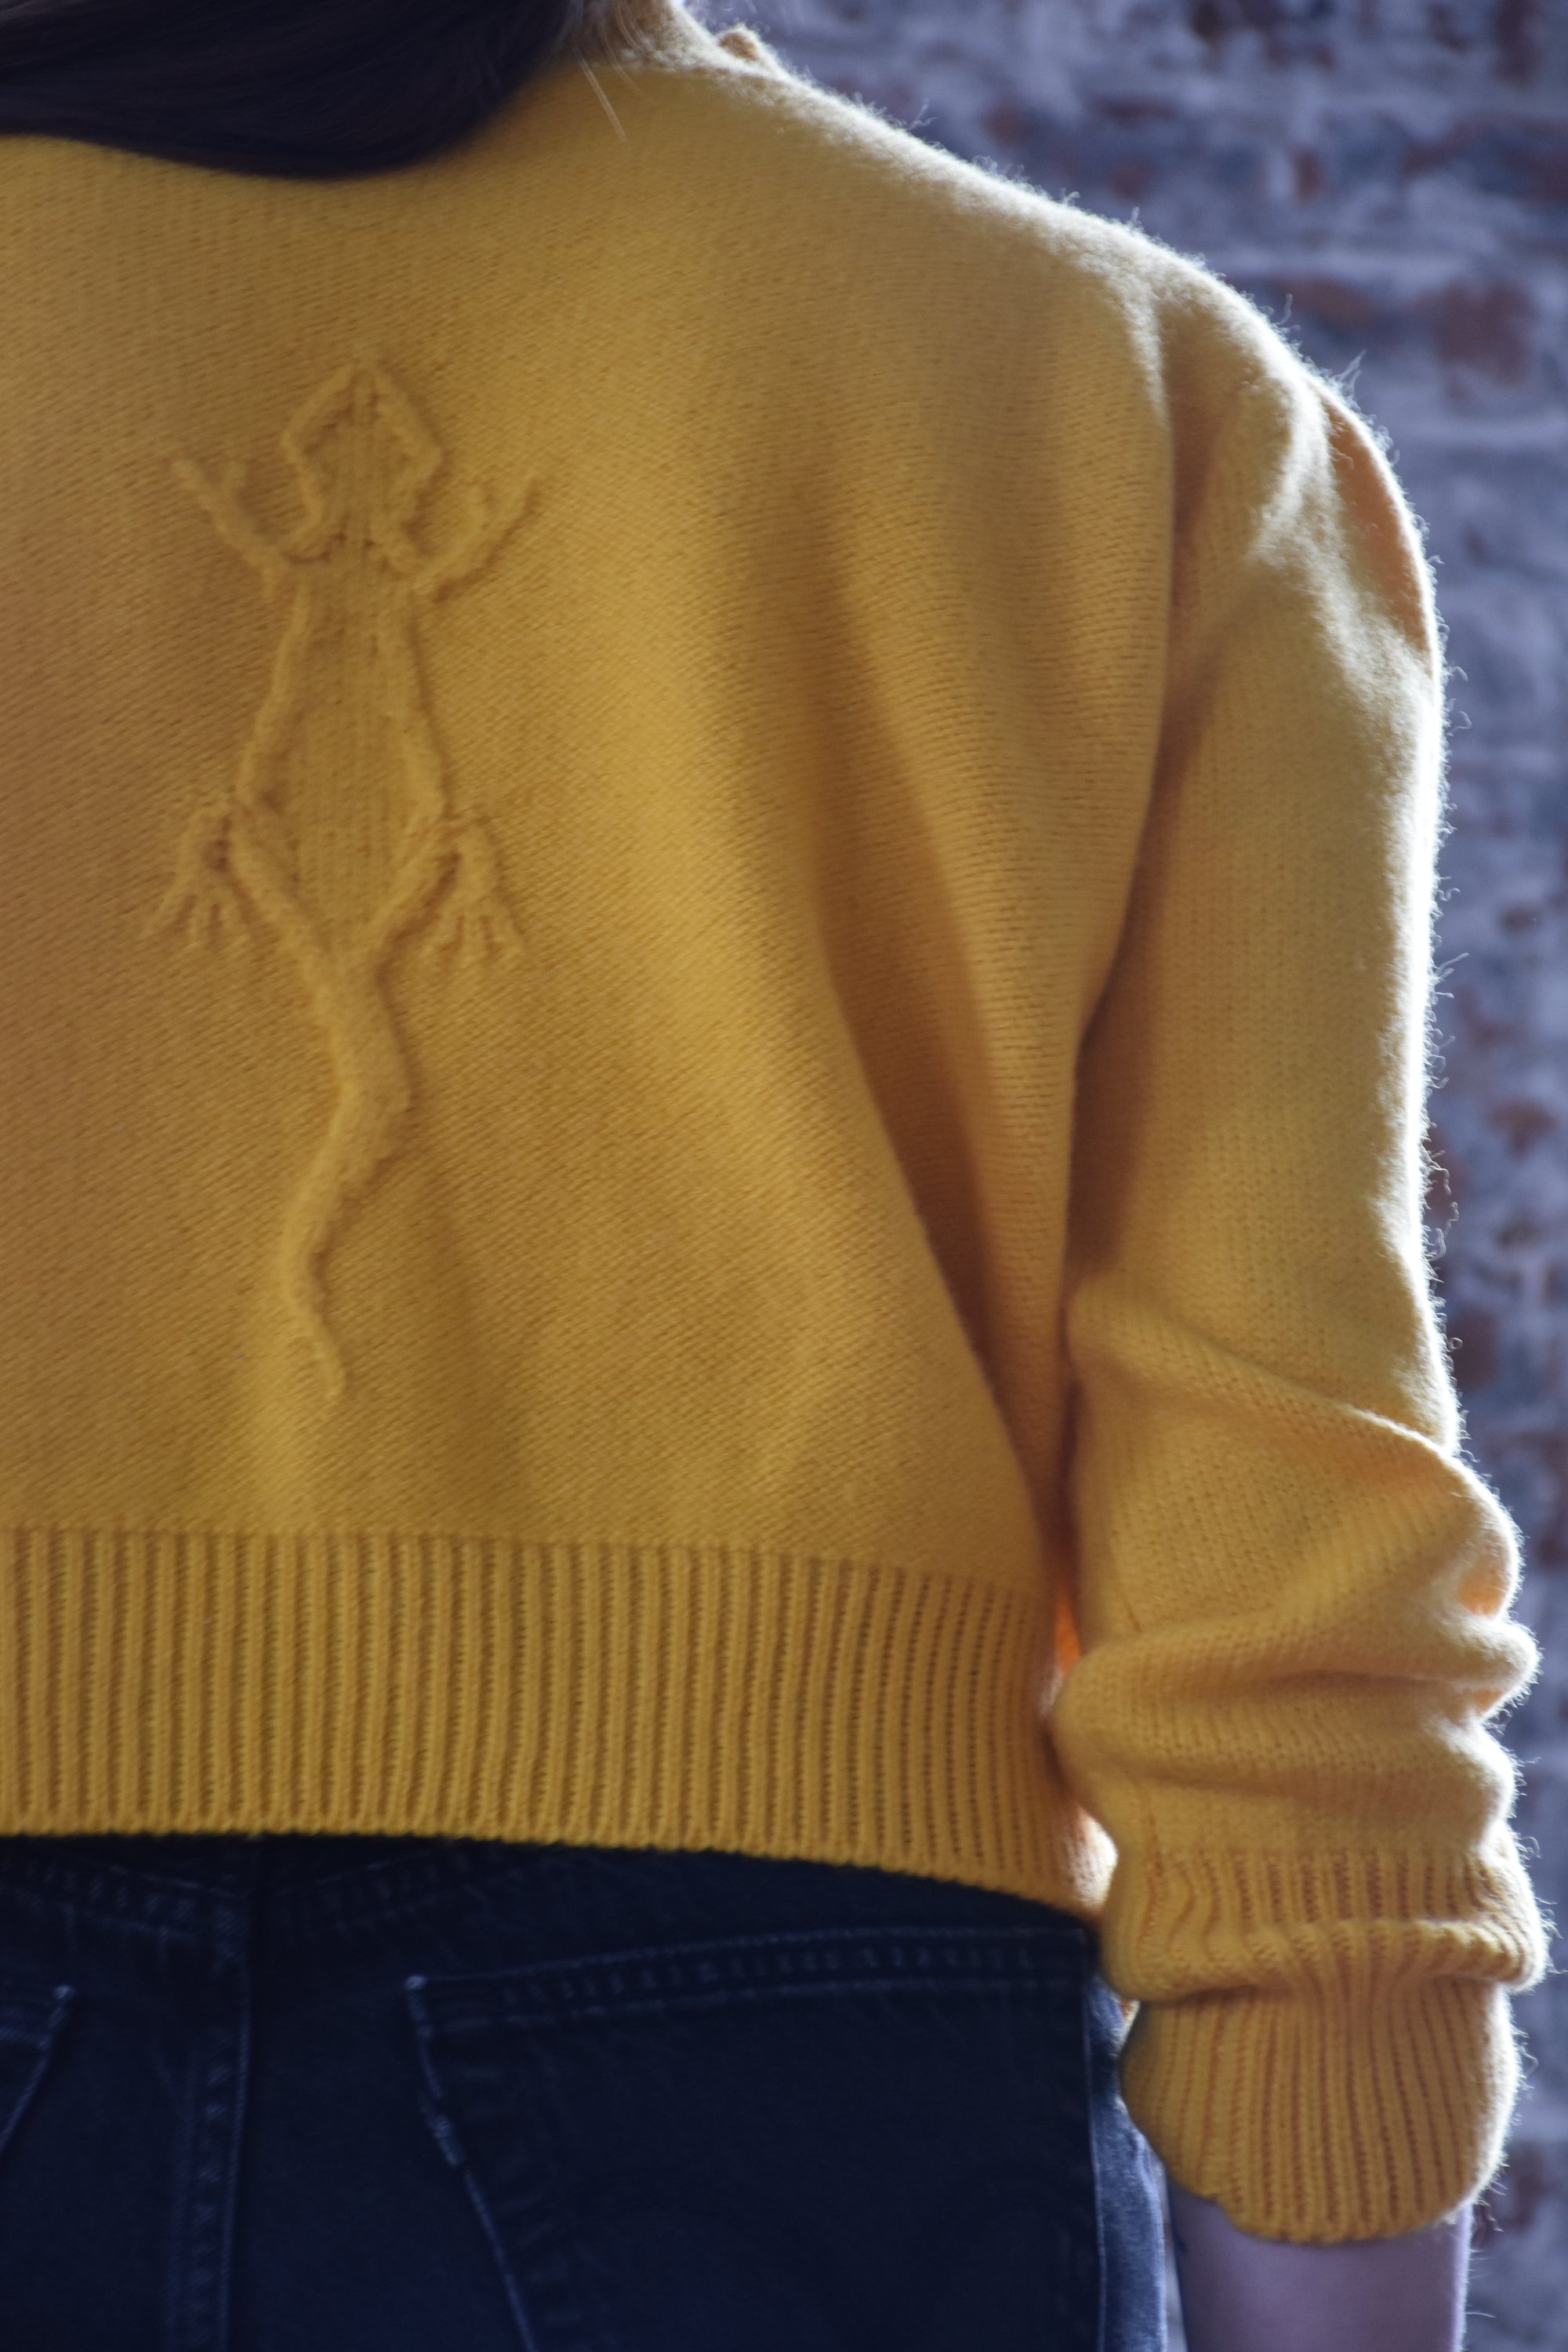 GECK0 emblem sweater